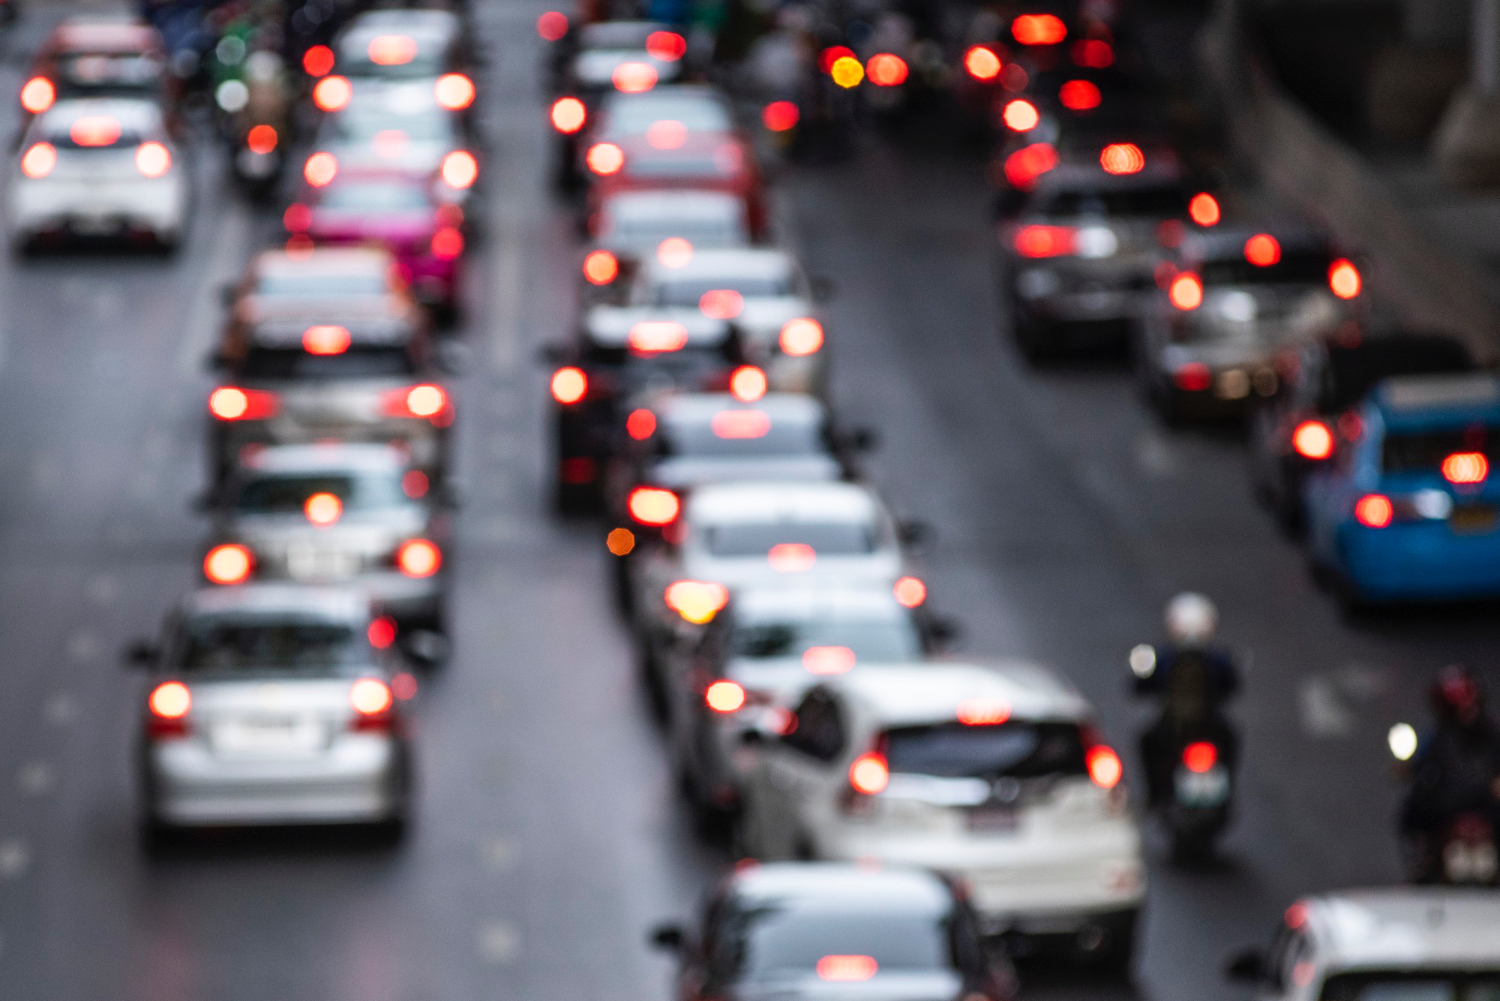 El tráfico y los atascos en el transporte pueden afectar la salud mental, advierte estudio